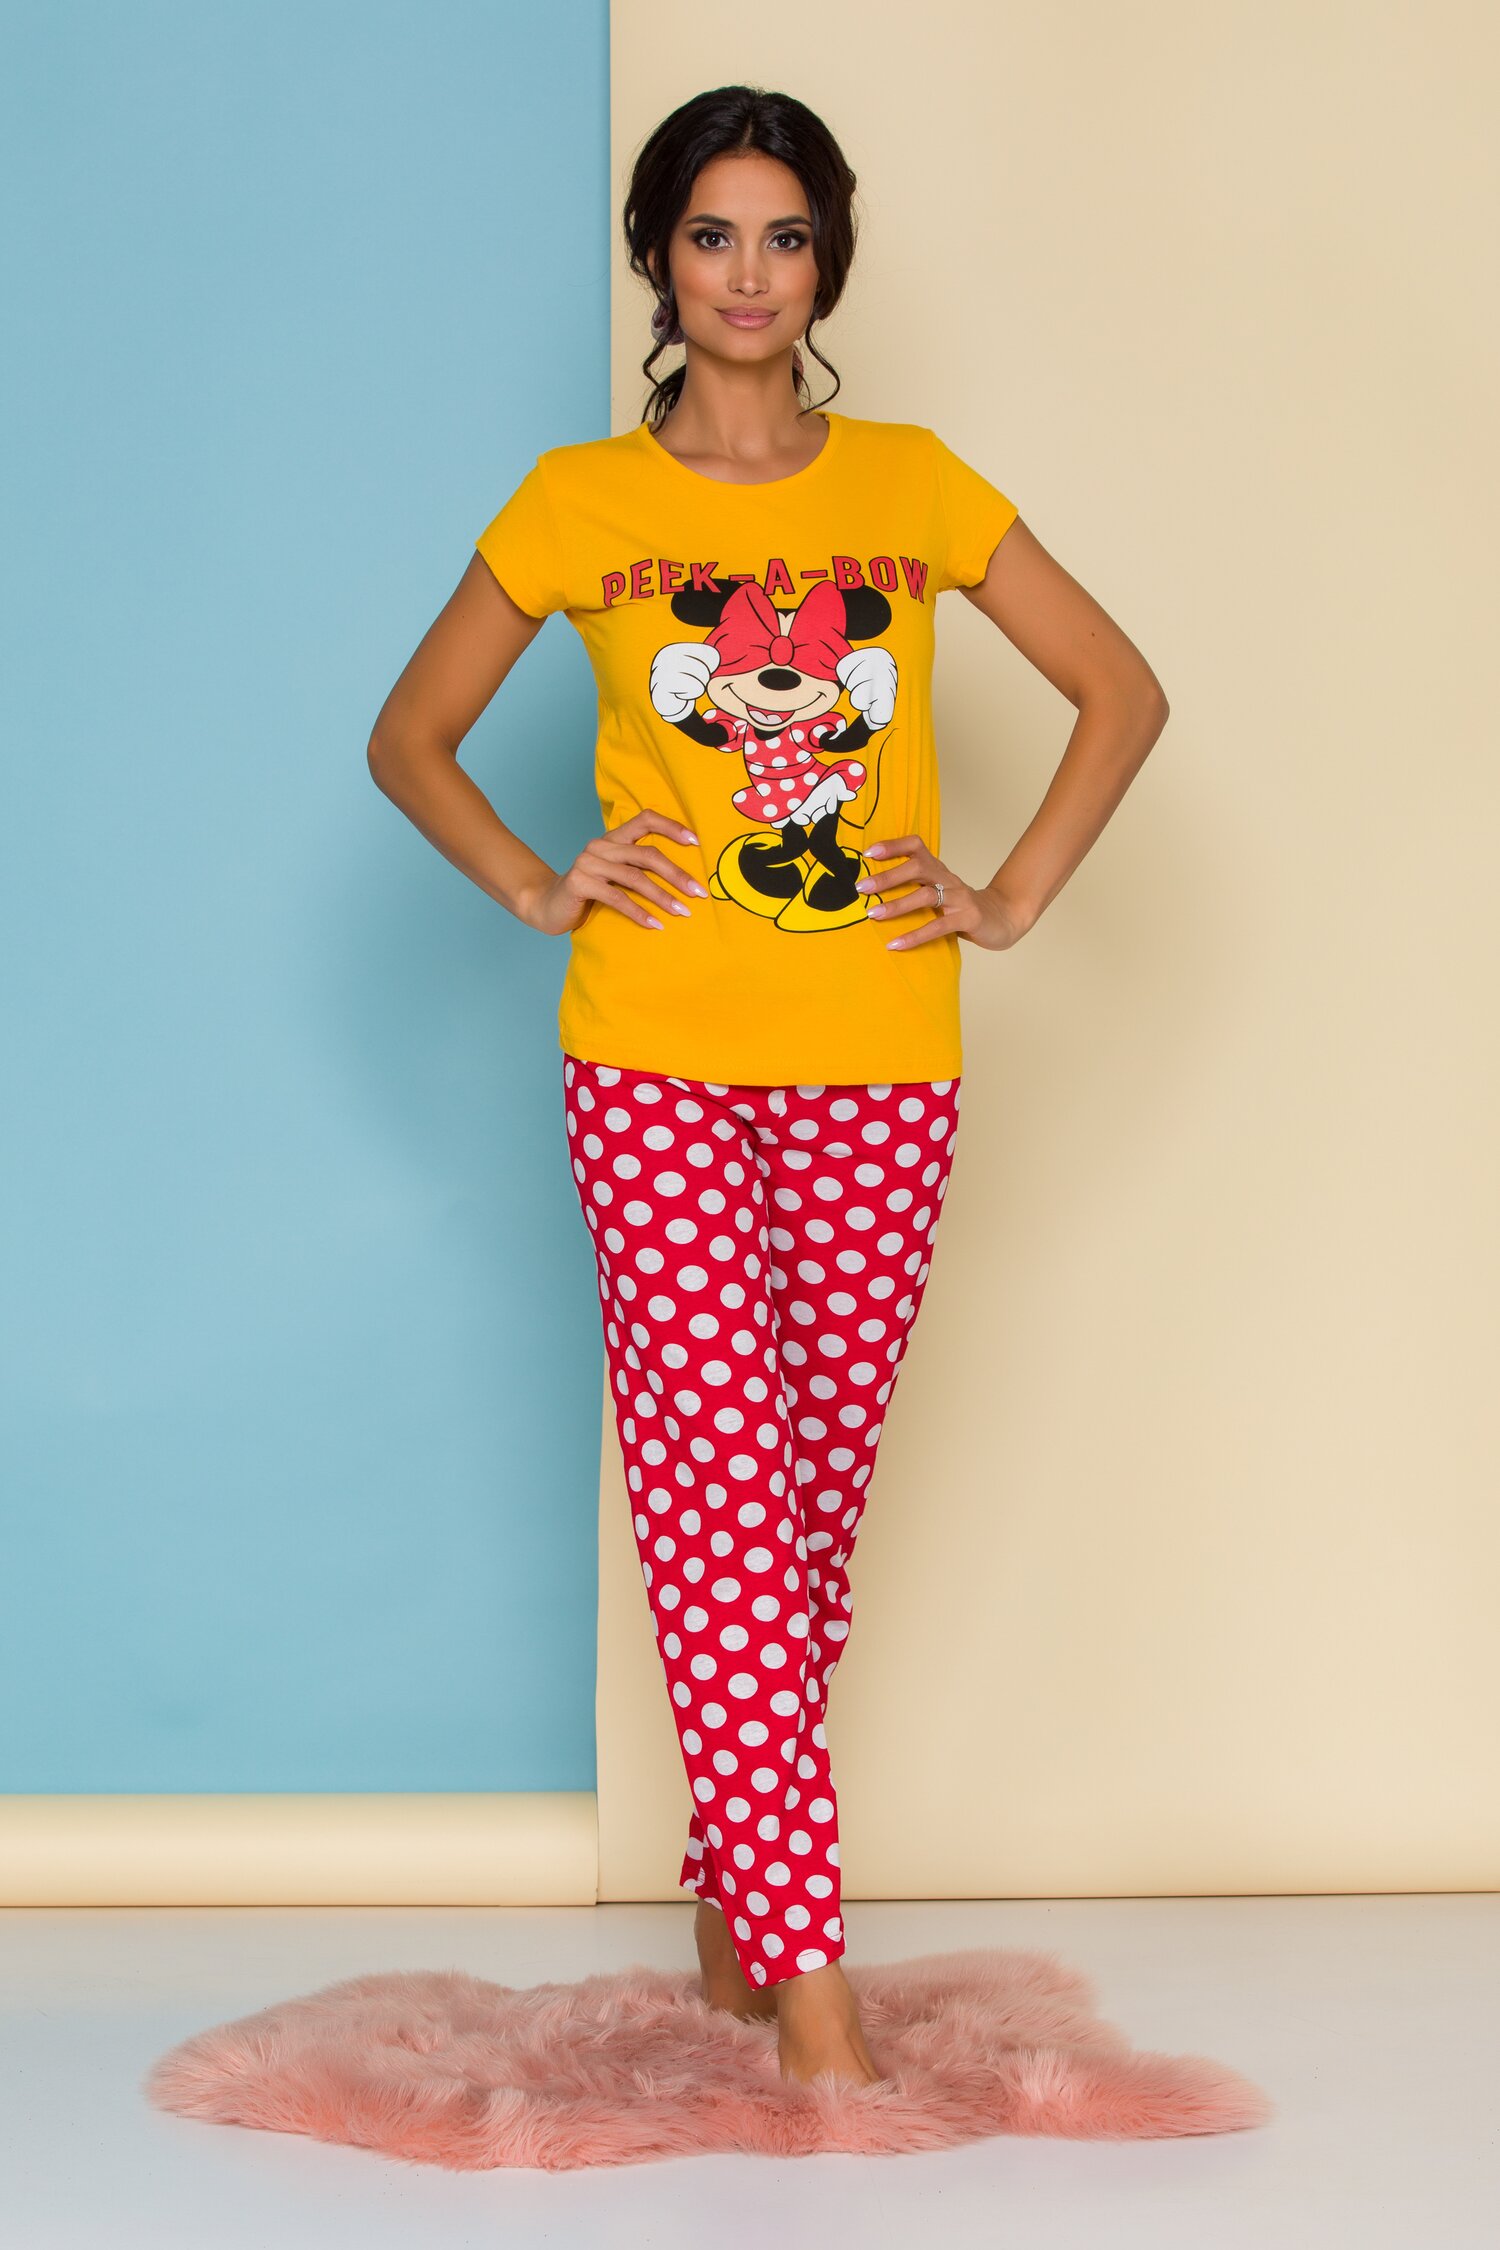 Pijama Peak-a-bow cu tricou galben Minnie Mouse si buline